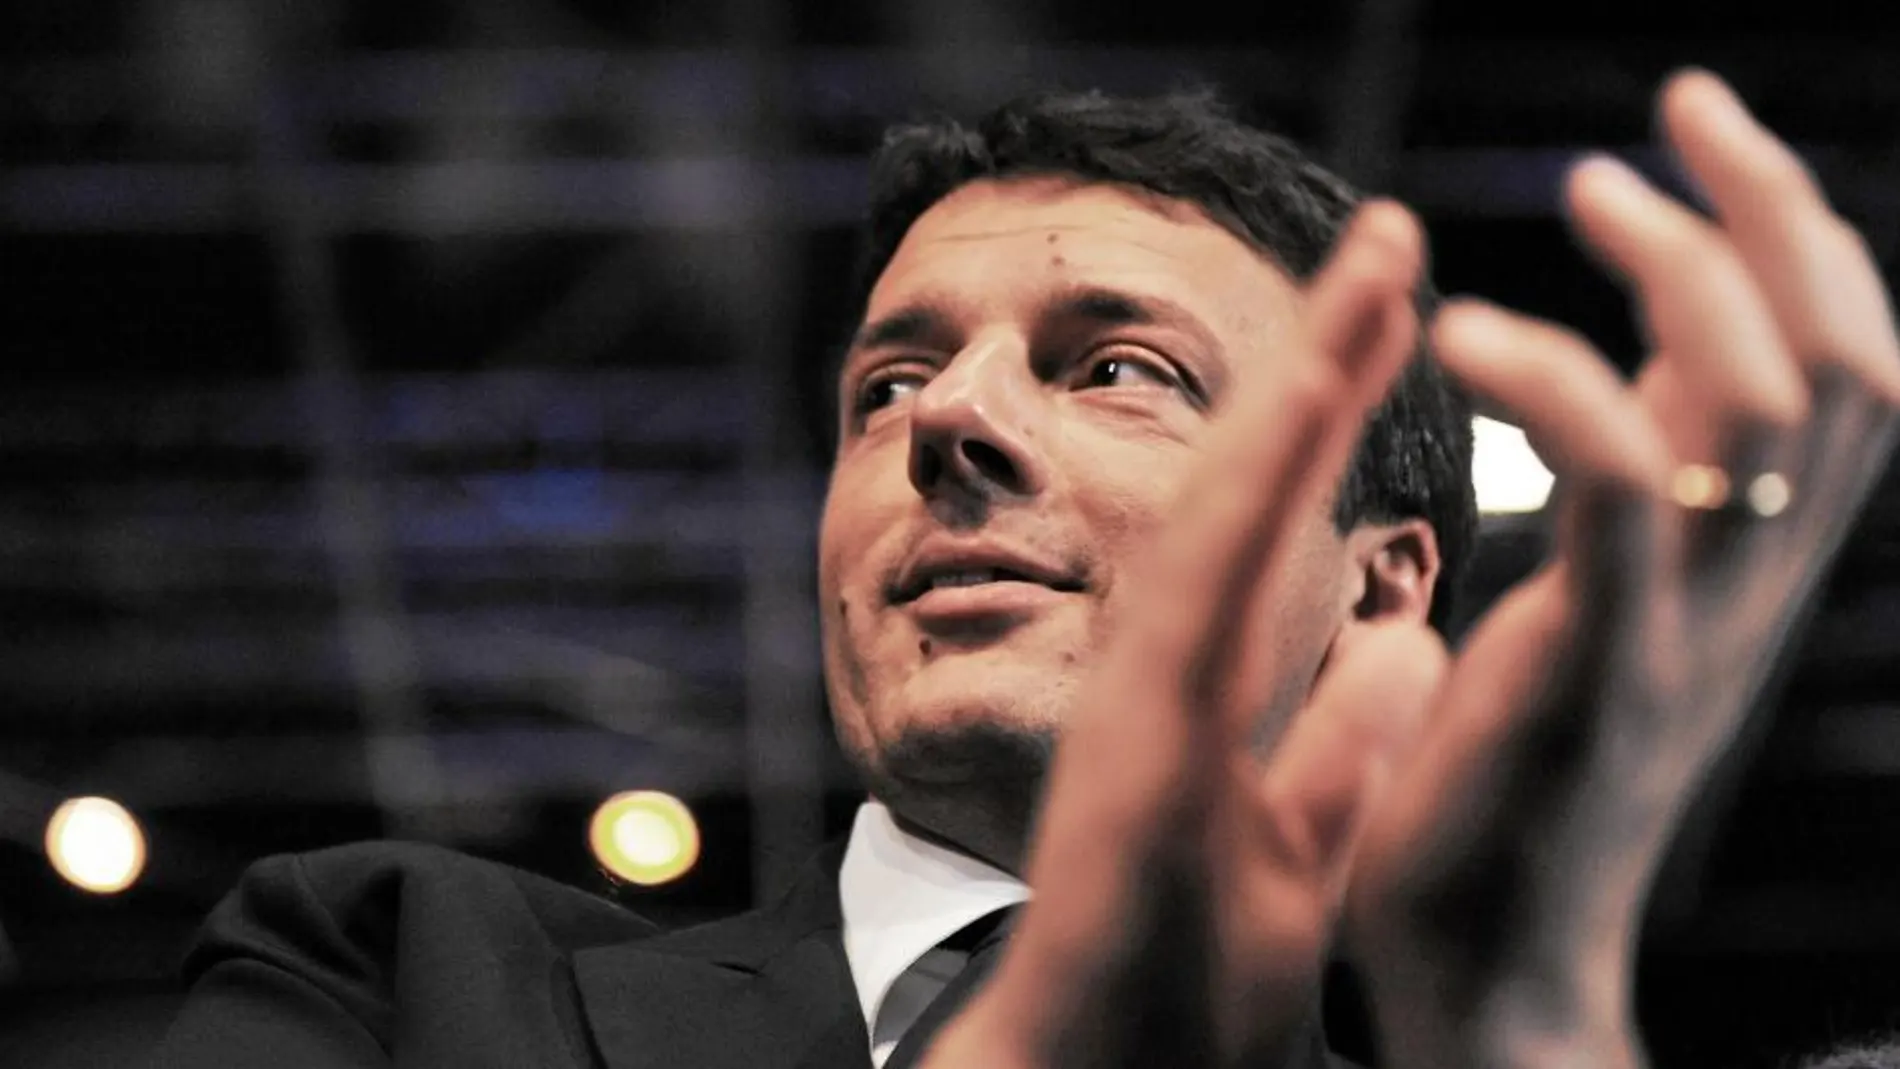 Matteo Renzi al ser elegido como candidato a primer ministro de Italia